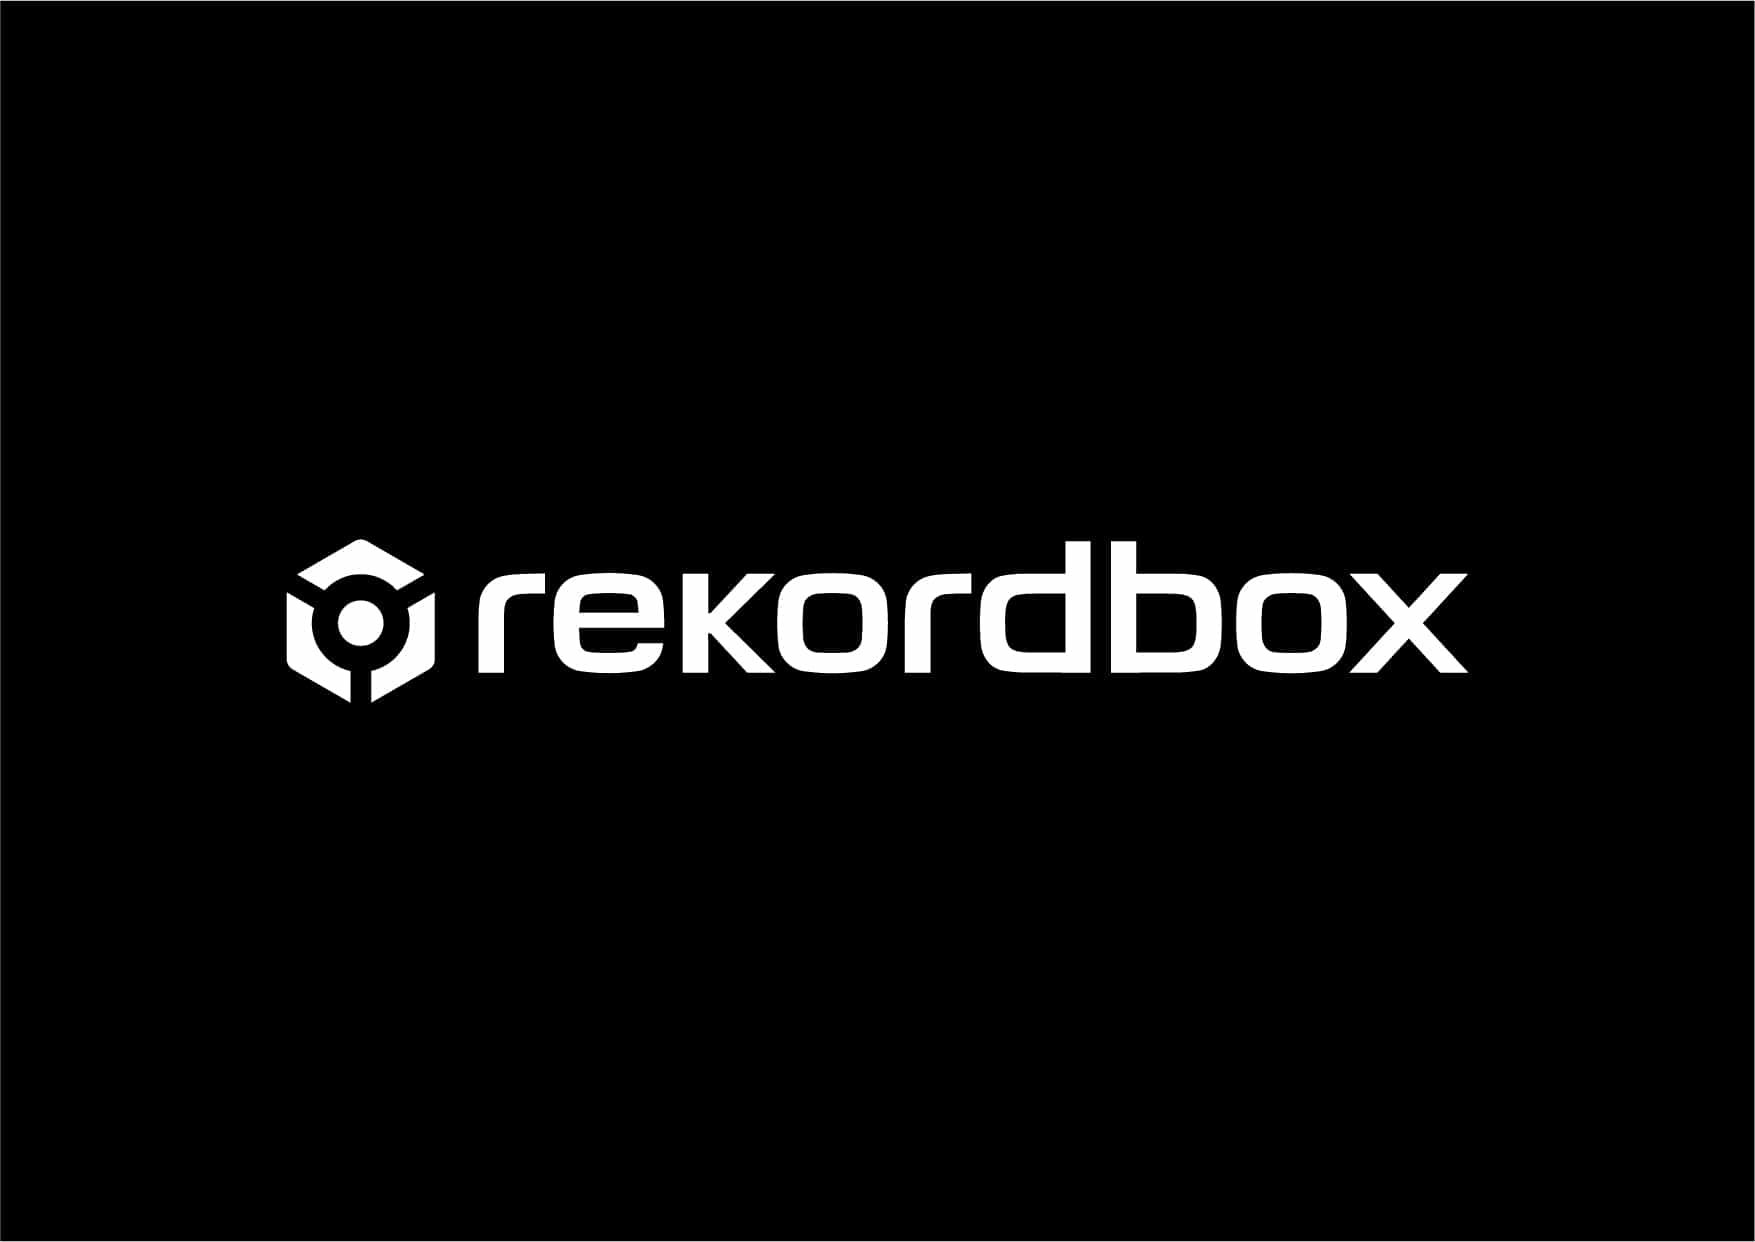 Rekordbox v6 - ¿Un paso hacia el futuro? 3